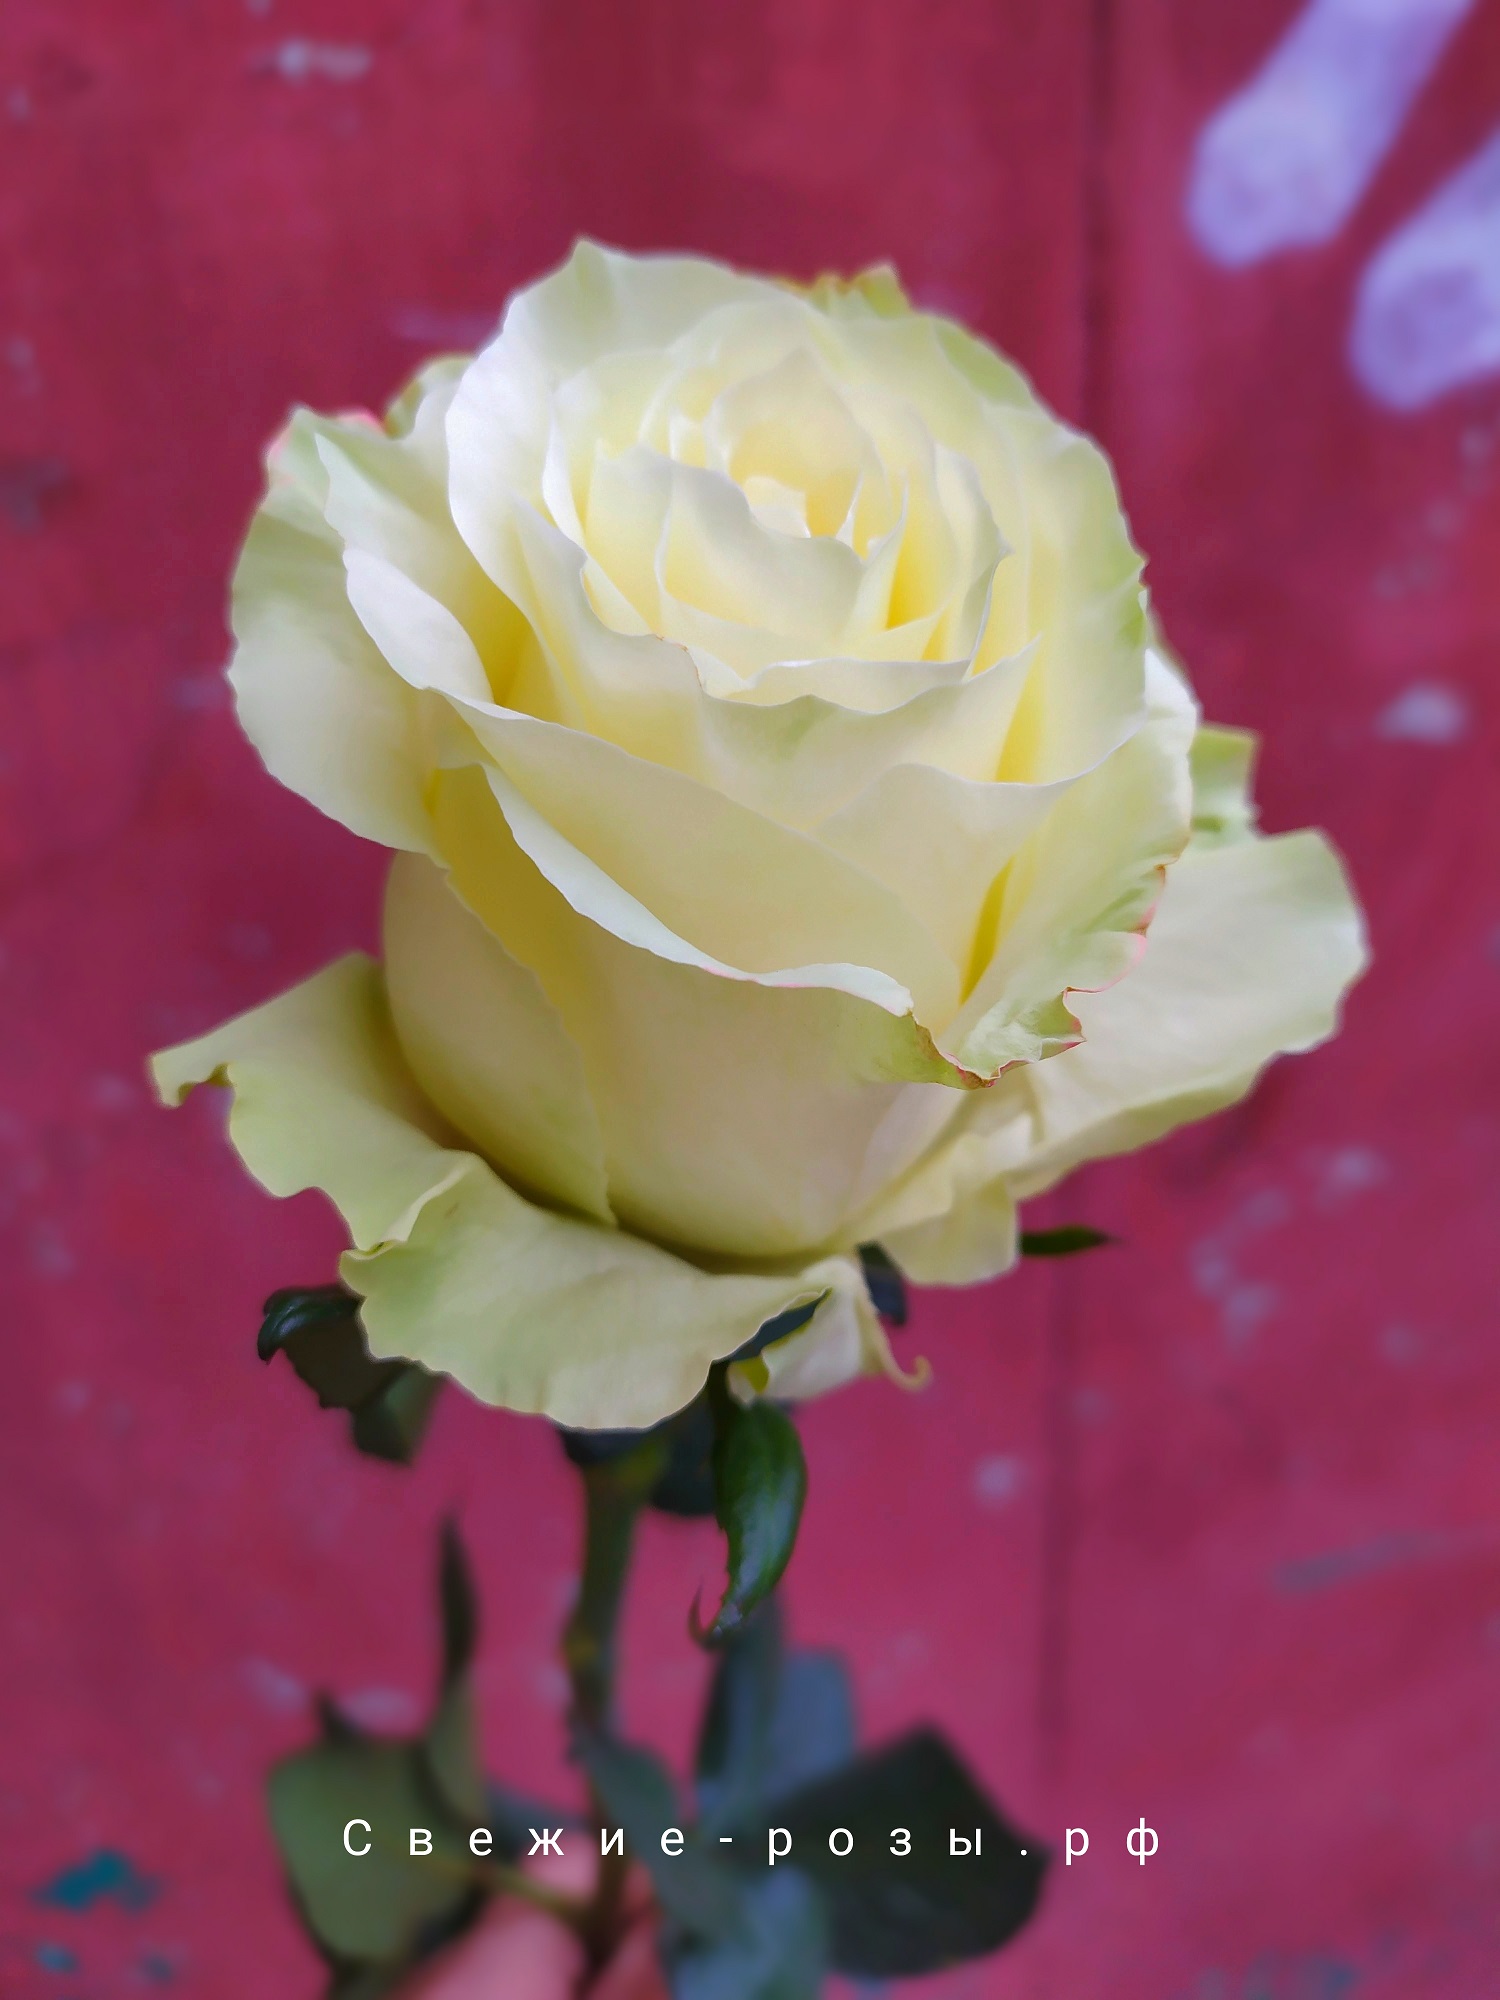 Свежие розы Пермь roza belaya mondial perm